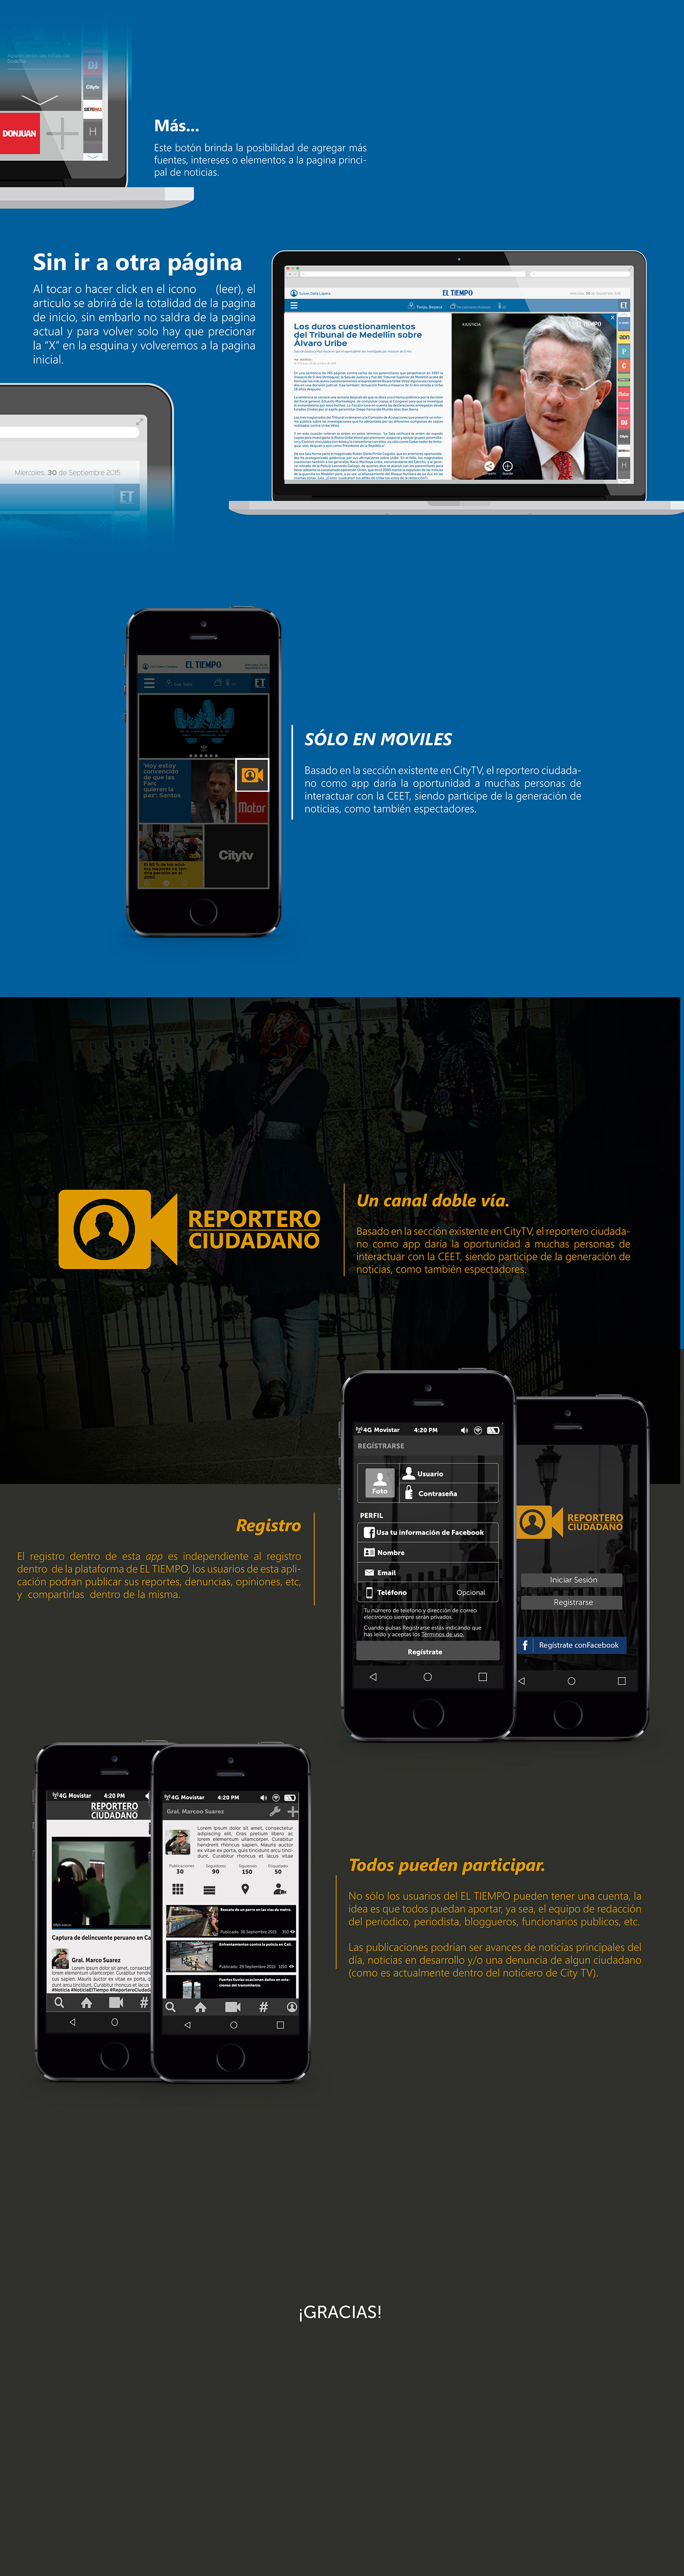 Eltiempo et Casa editorial ElTiempo diseño Periodicos Web Cali colombia Propuesta app social Reportero